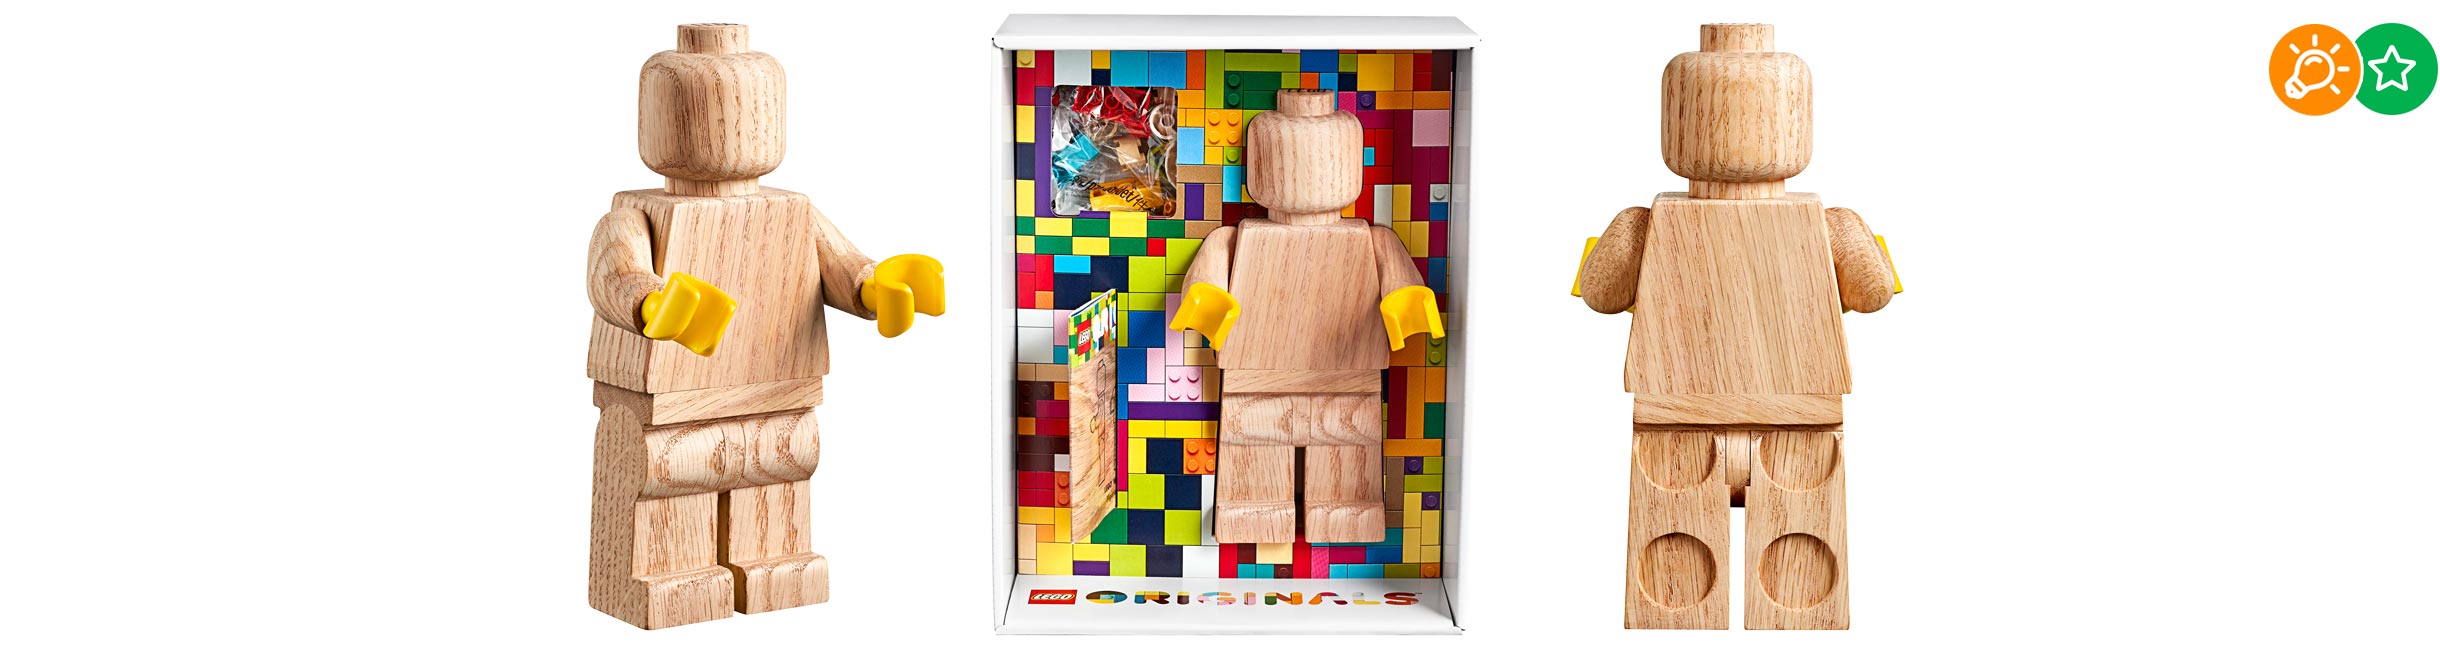 Рекламная акция Лего (LEGO) «Большая деревянная минифигурка!»